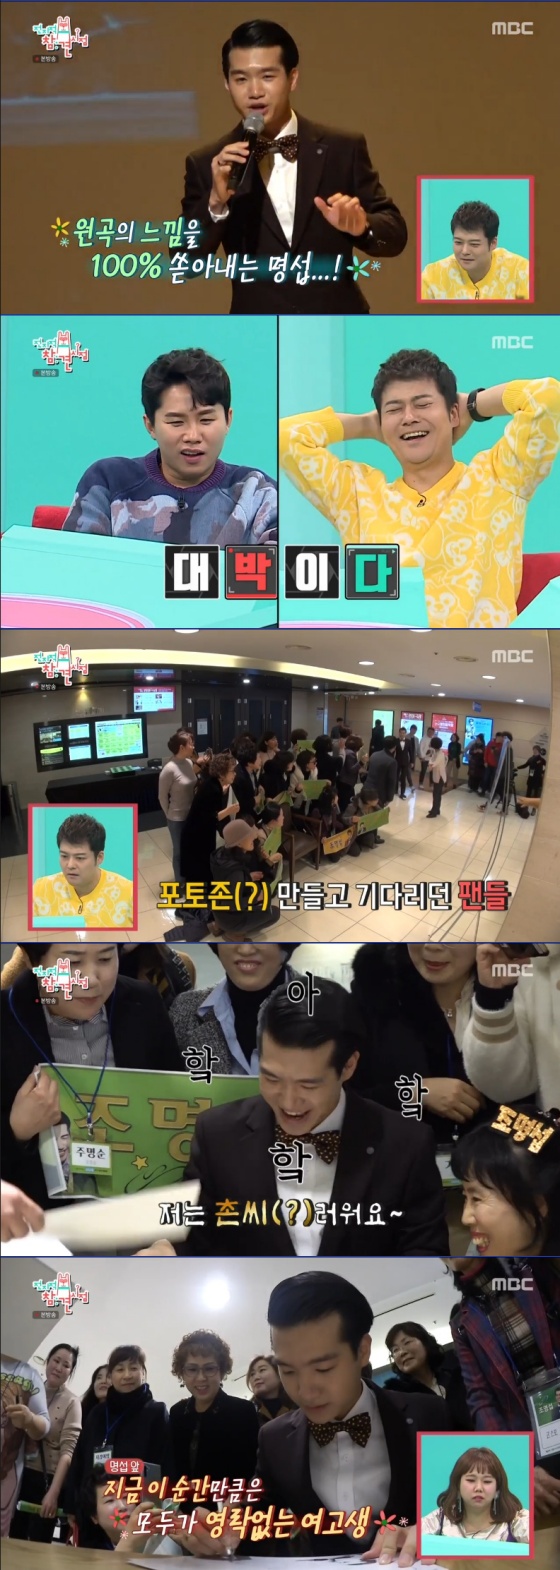 /사진= MBC 주말 예능프로그램 \'전지적 참견 시점\' 방송 화면